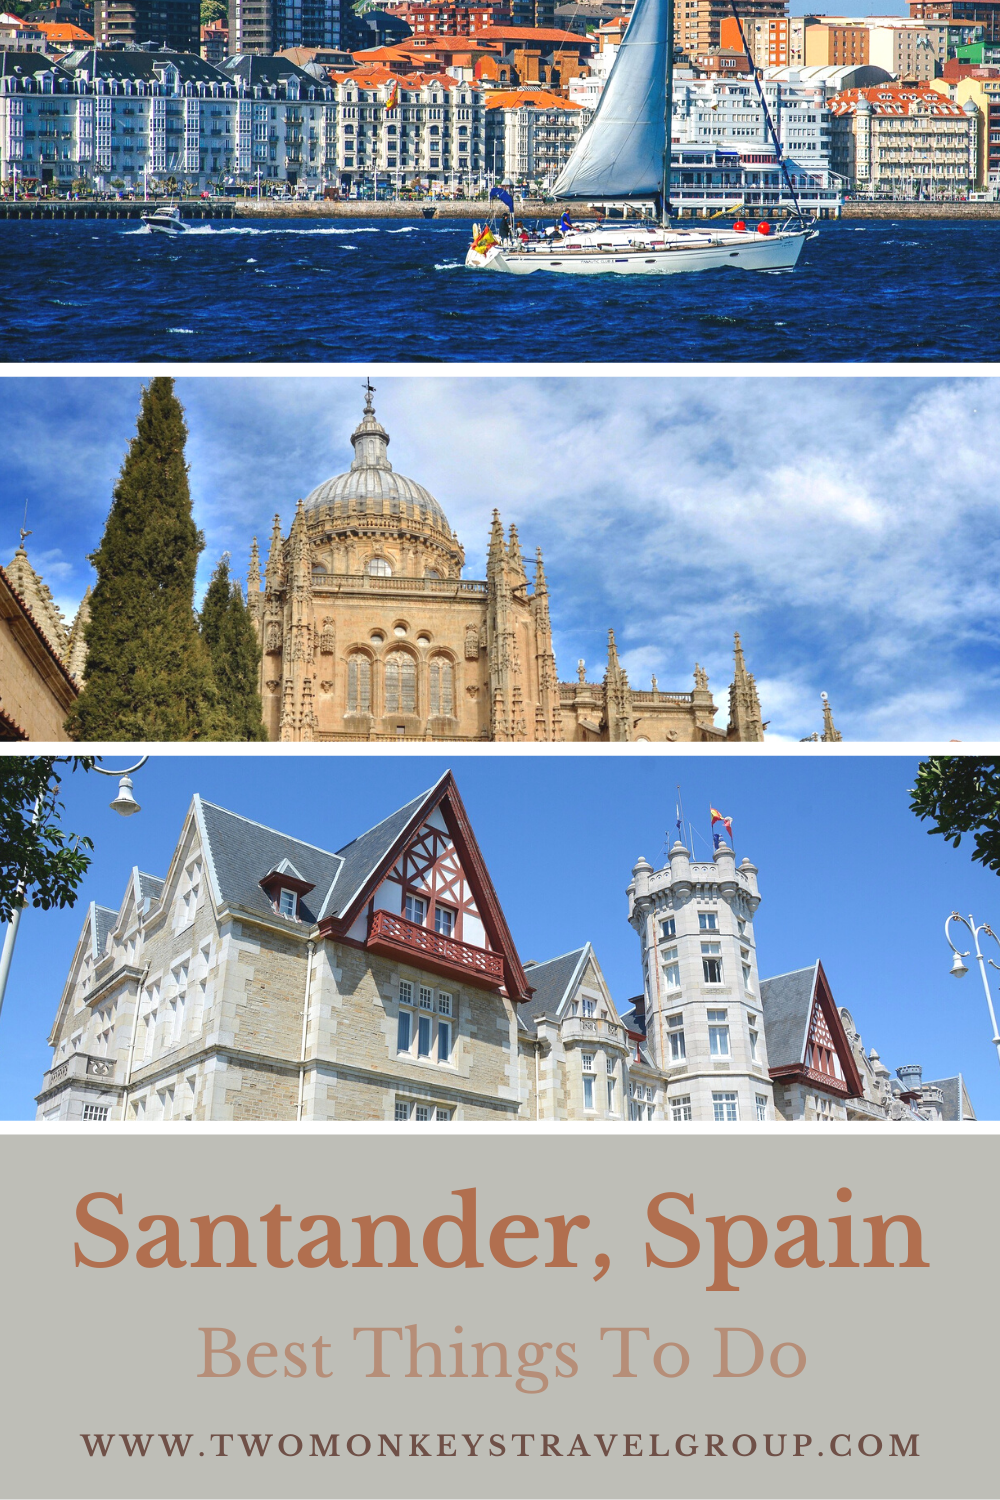 15 Best Things To Do in Santander, Spain